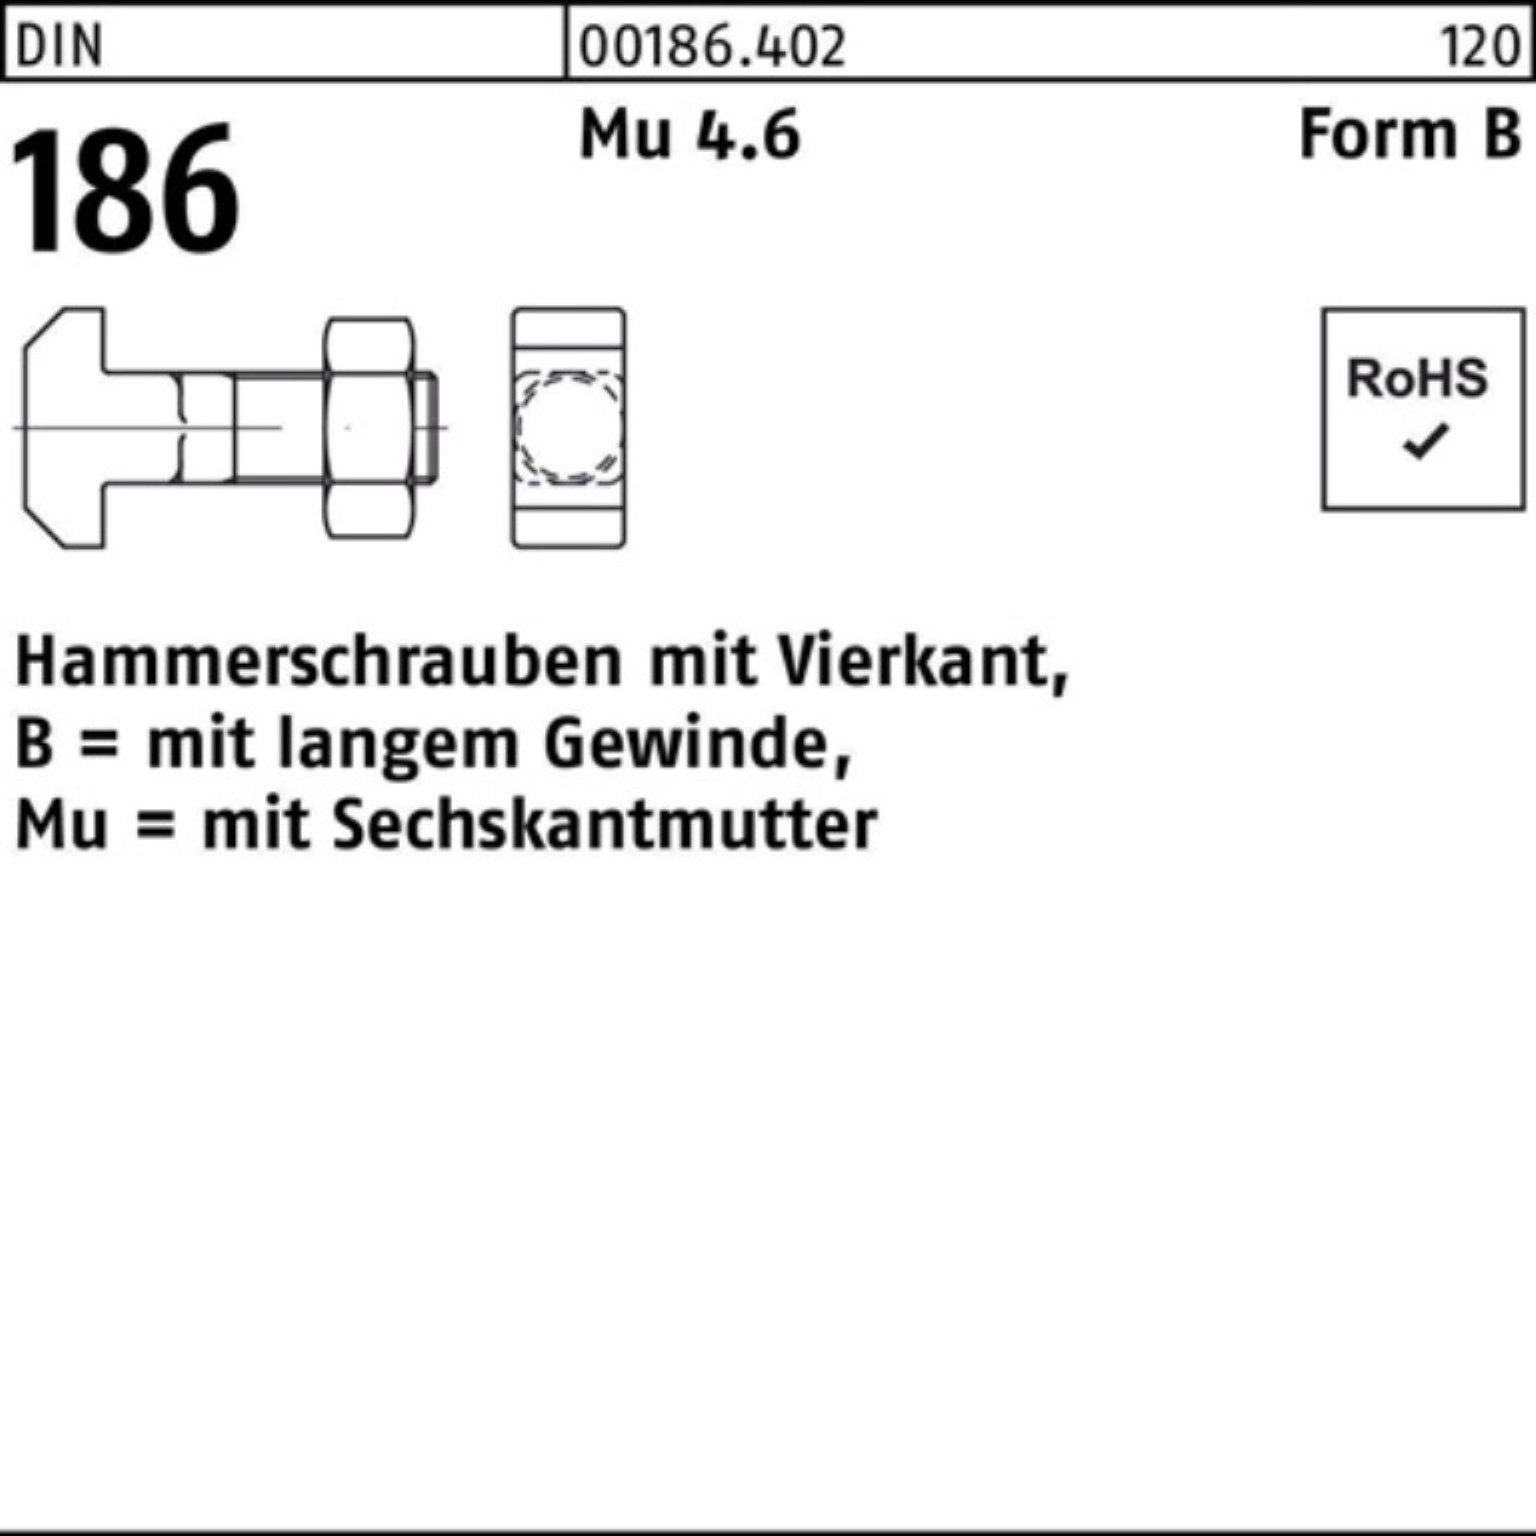 Reyher DIN Hammerschraube Vierkant 186 Pack 6-ktmutter 100er 70 BM 24x Schraube FormB